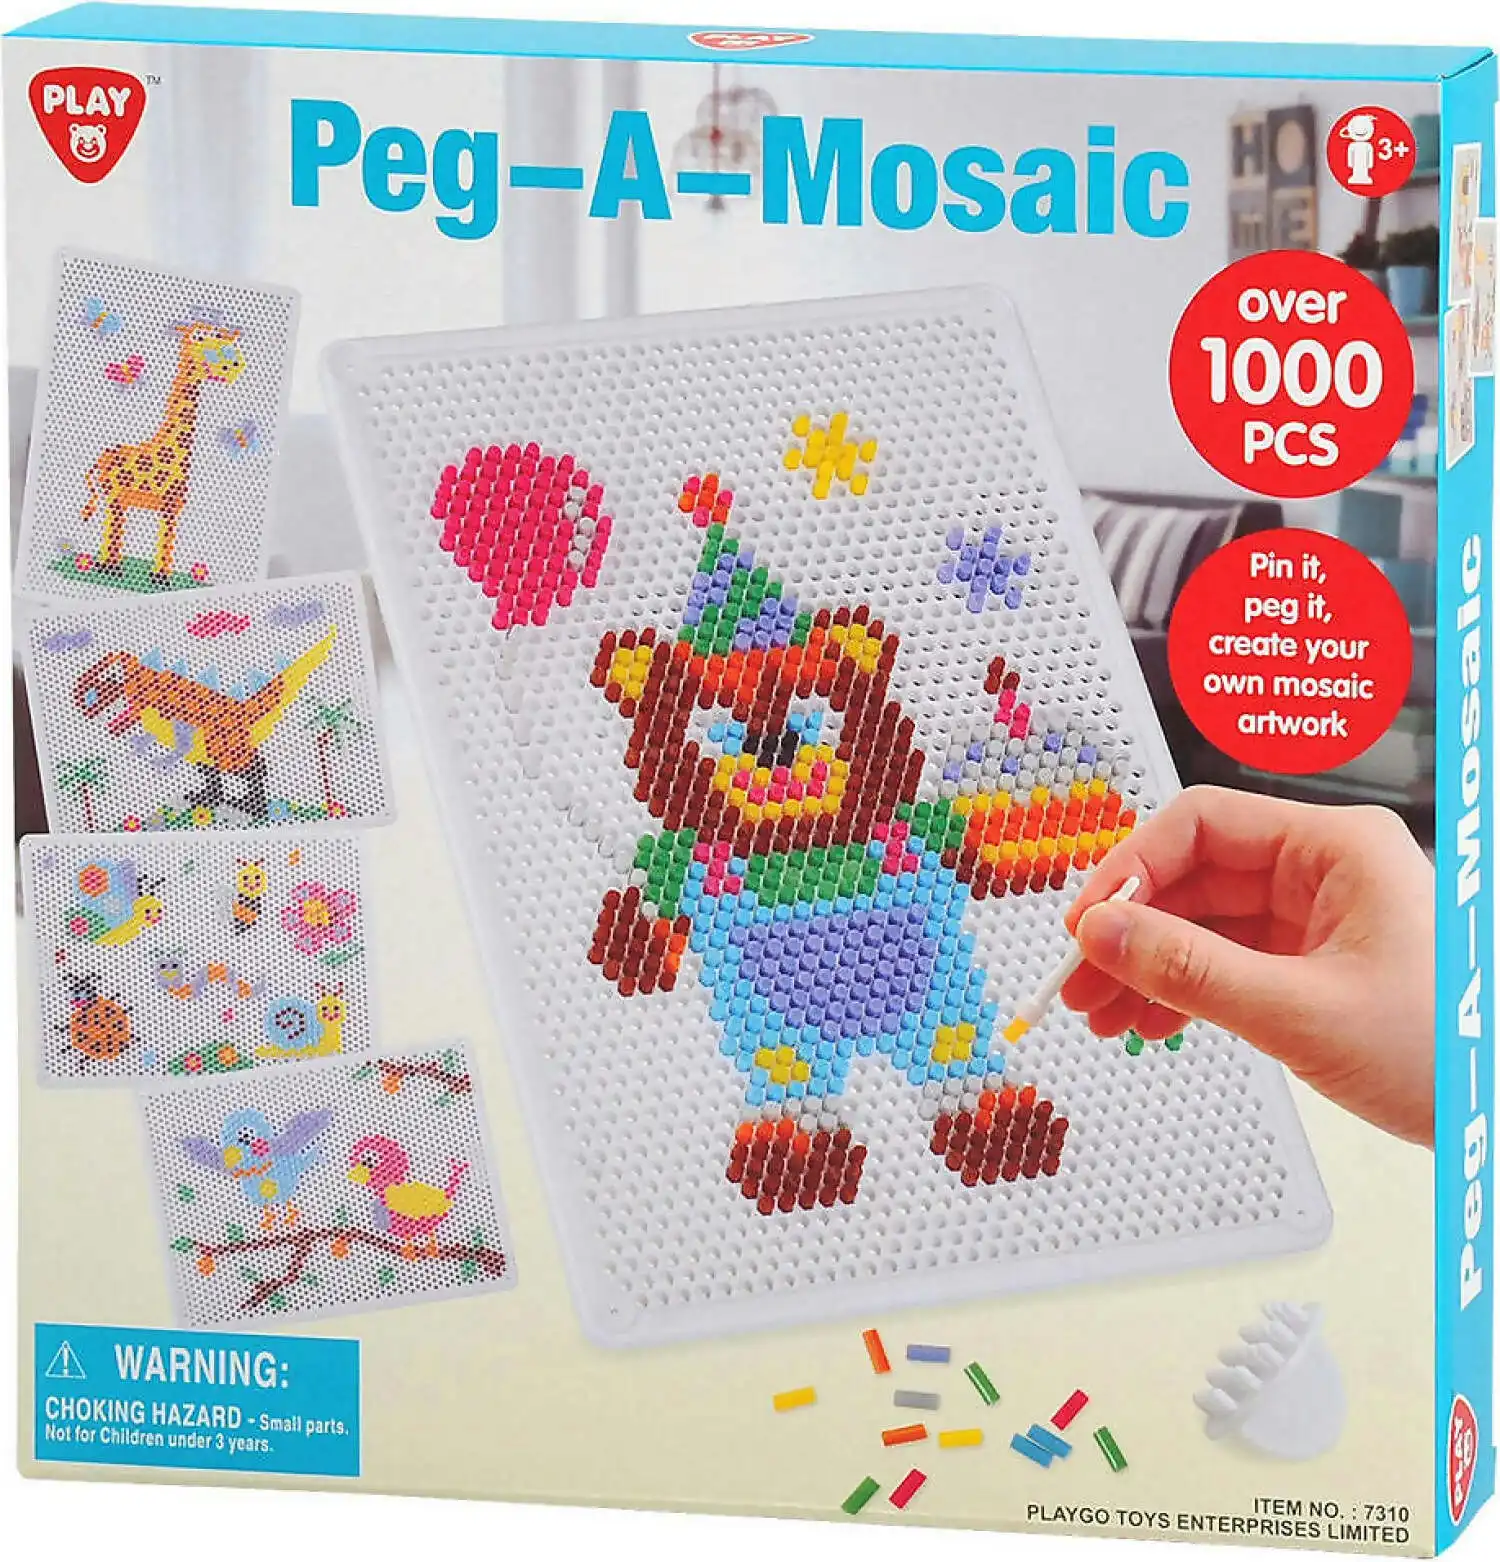 Playgo Toys Ent. Ltd - Peg-a-mosaic